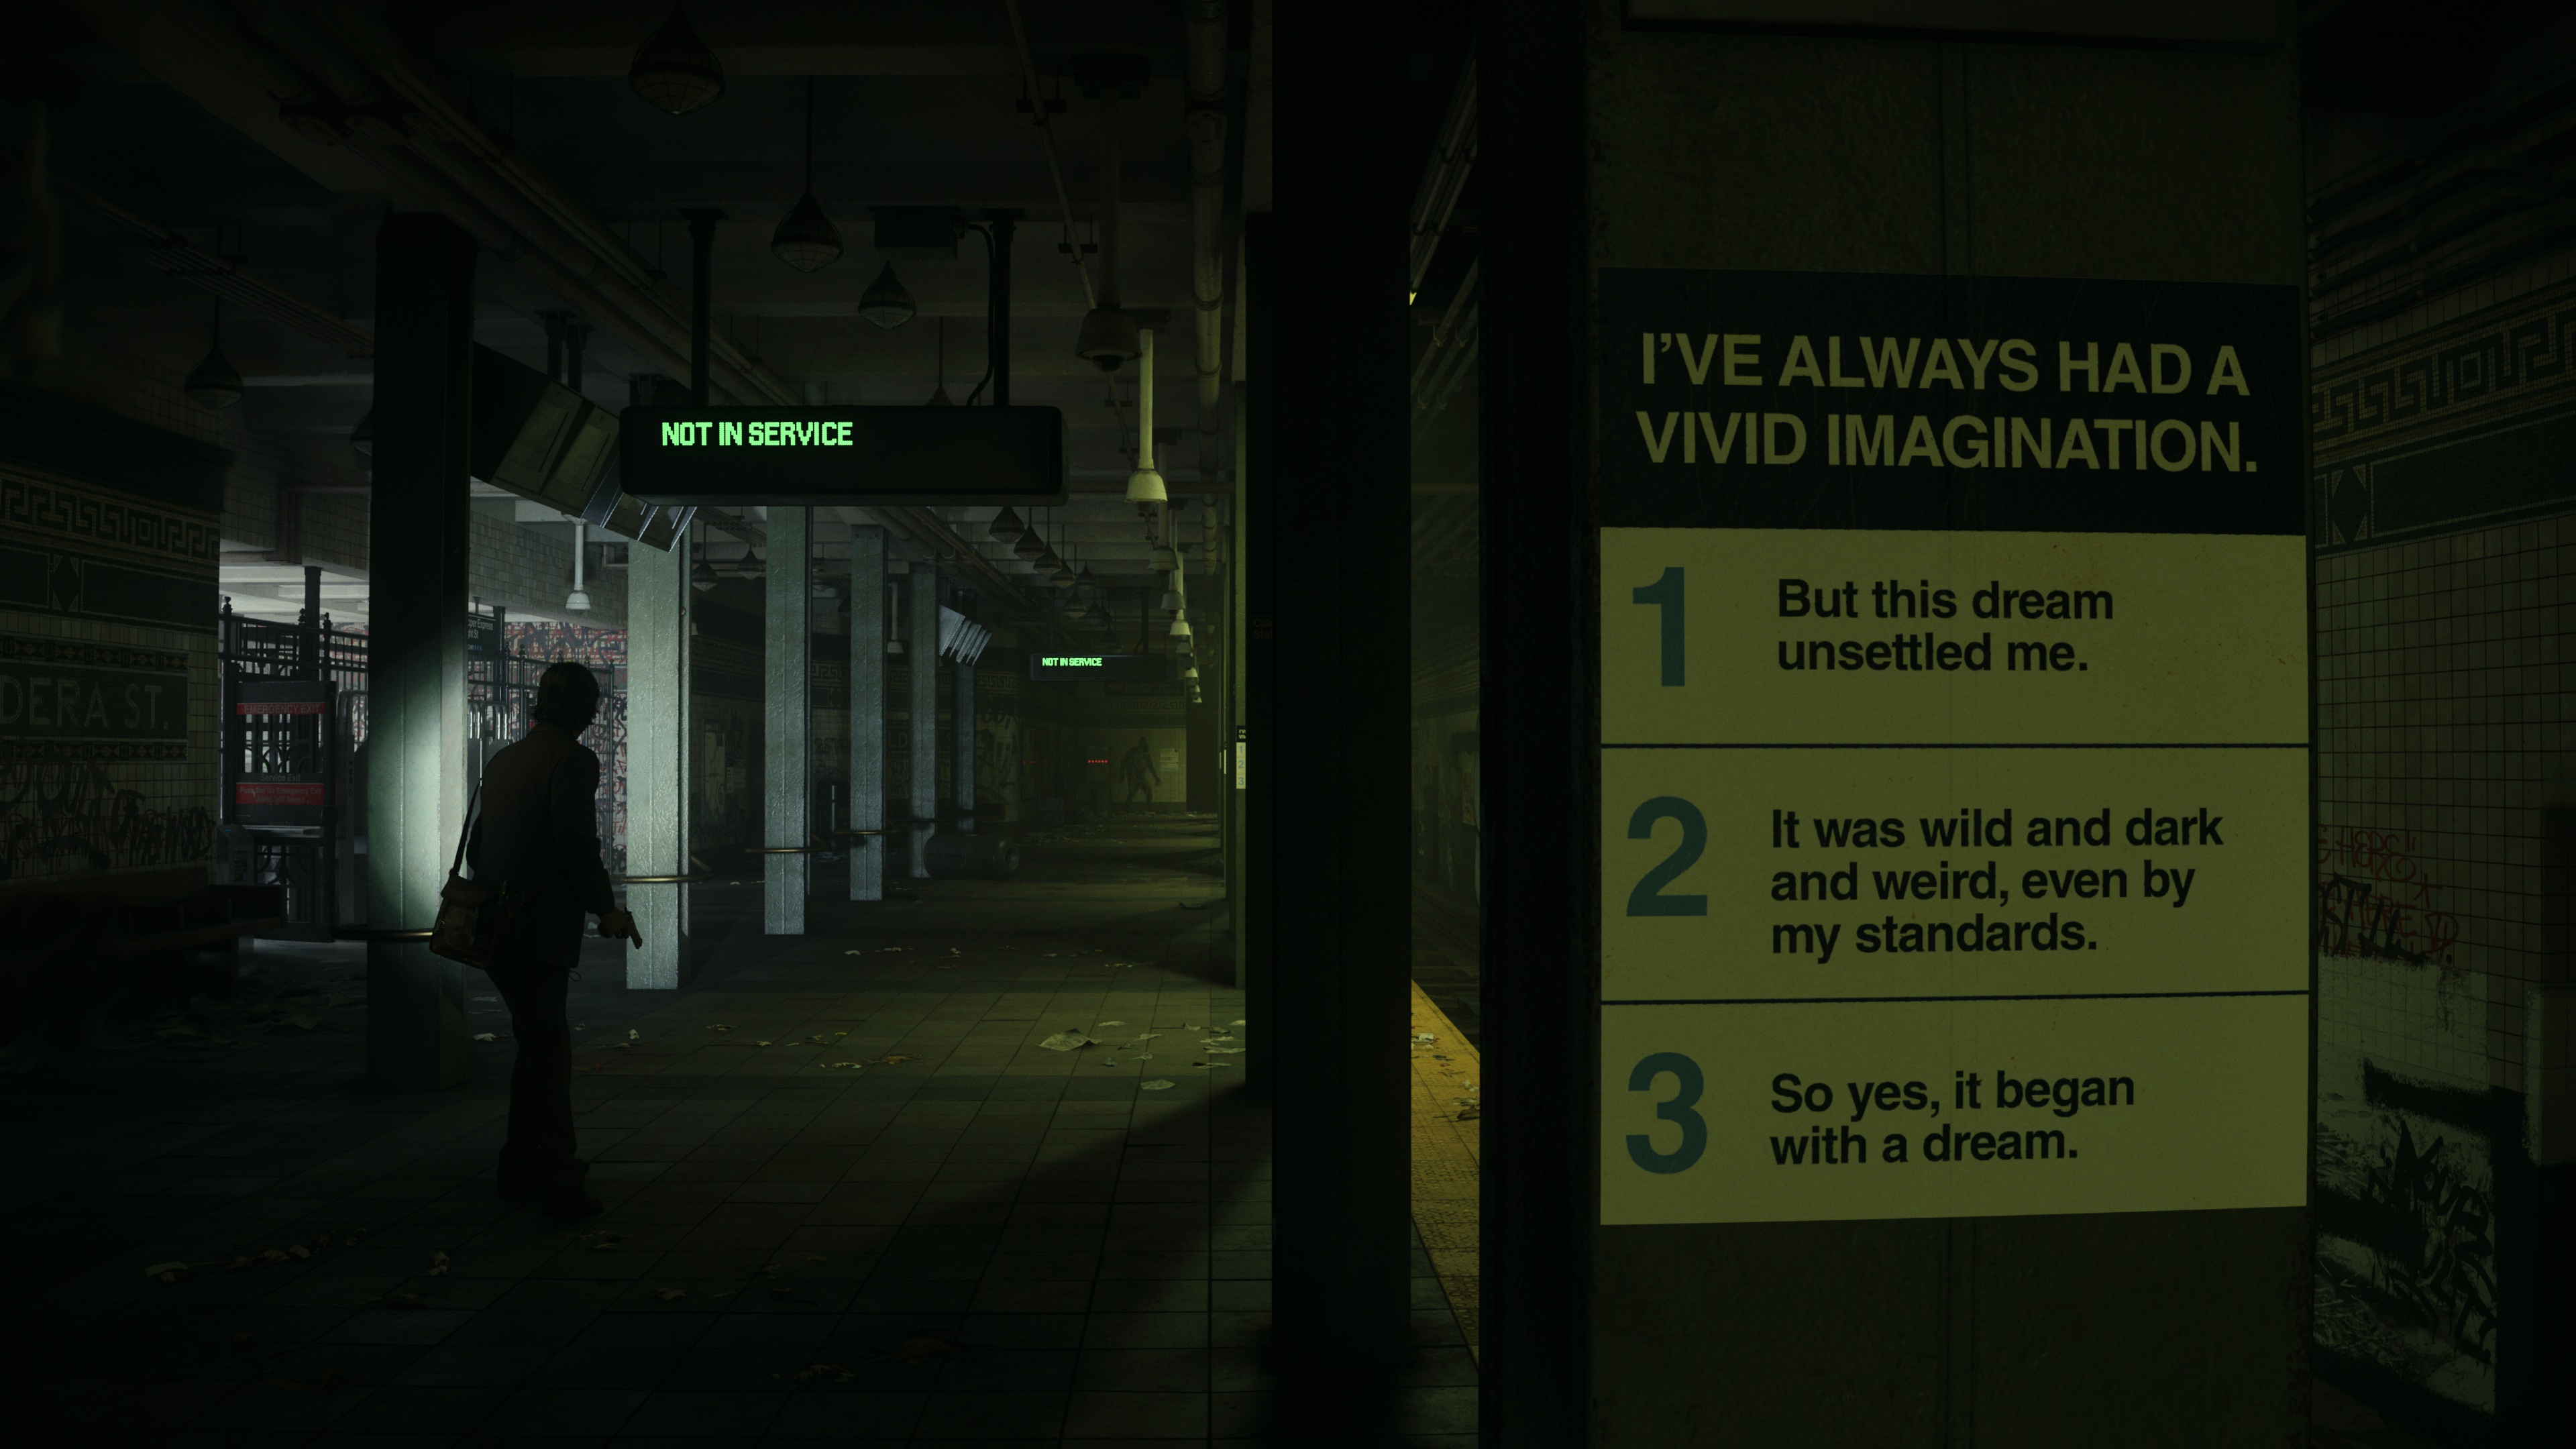 Zrzut ekranu z filmu Alan Wake 2 przedstawiający Alana Wake'a eksplorującego tunele metra z logiką snów wypisaną na ścianach